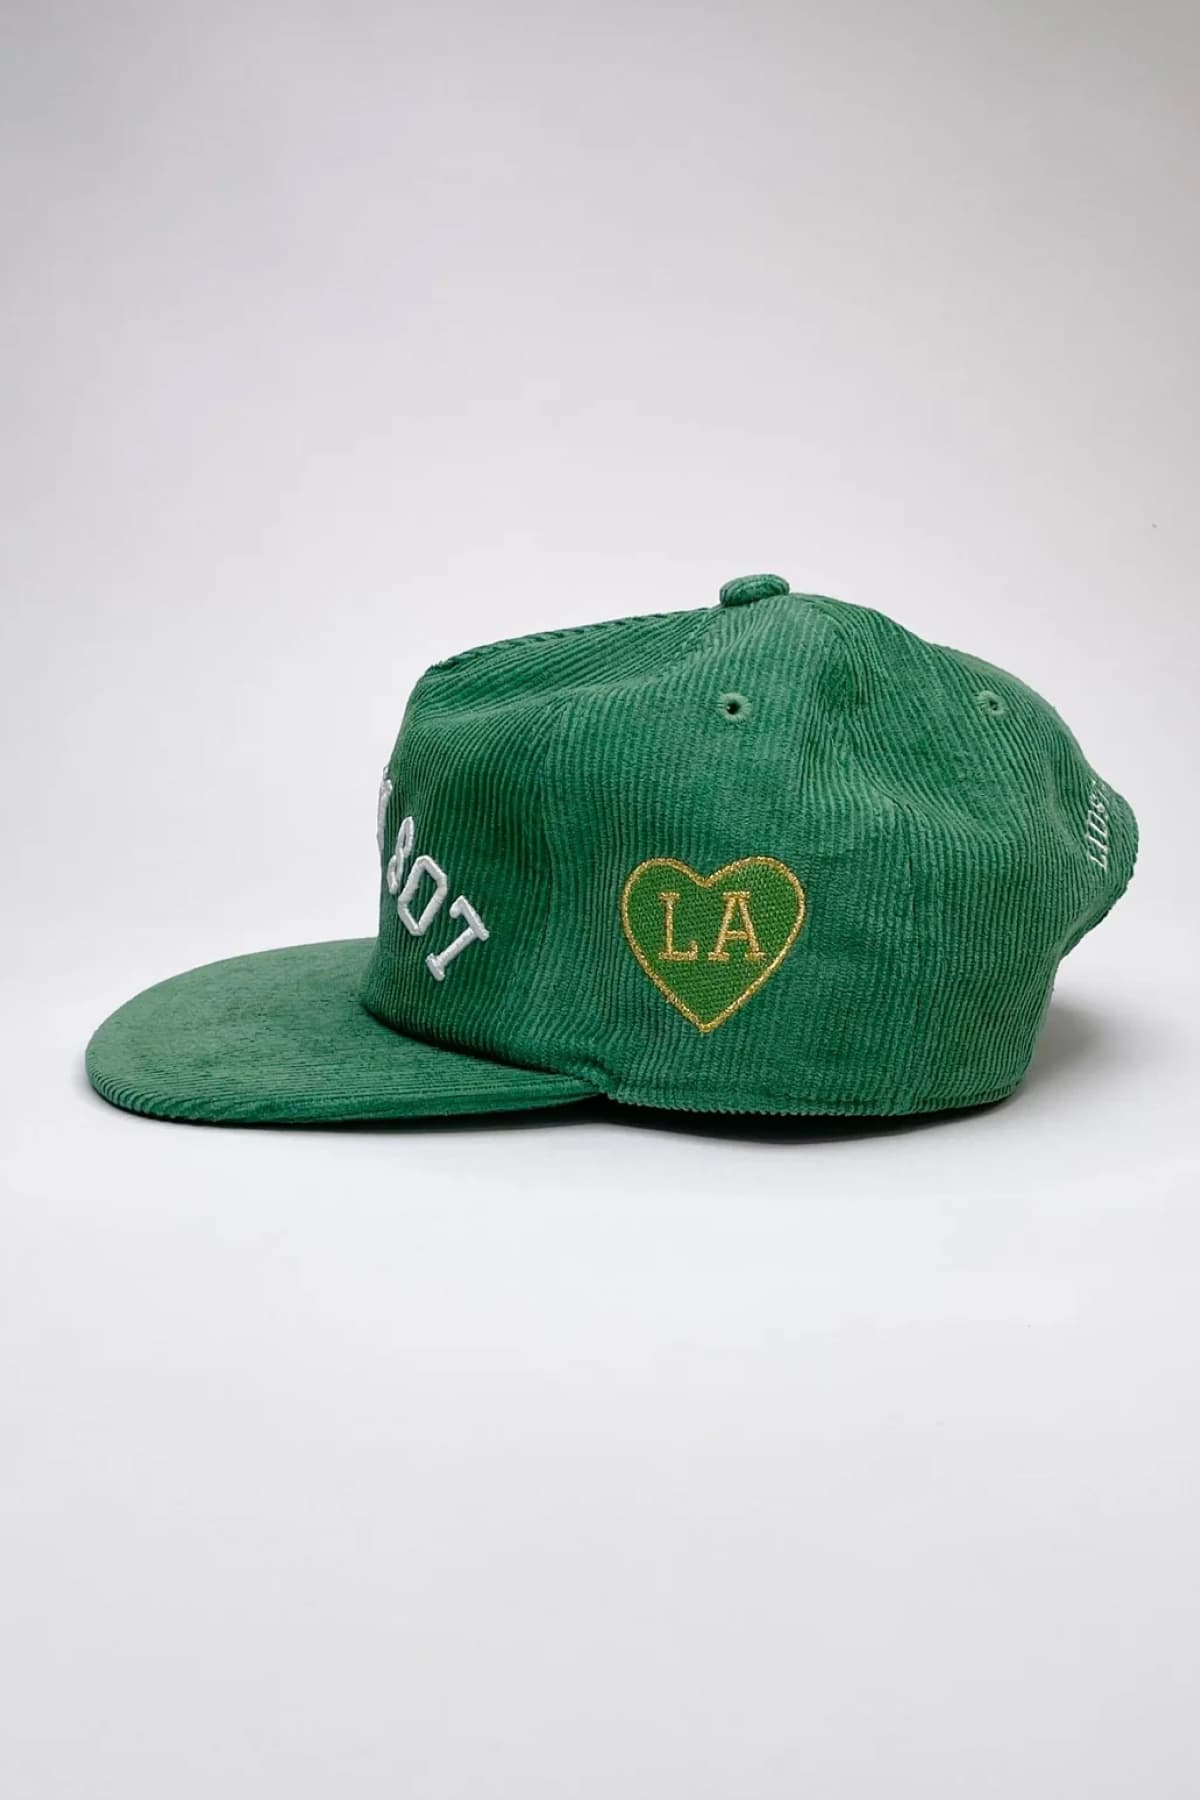 Los Angeles Rebel Corduroy Hat (Green) - Hat